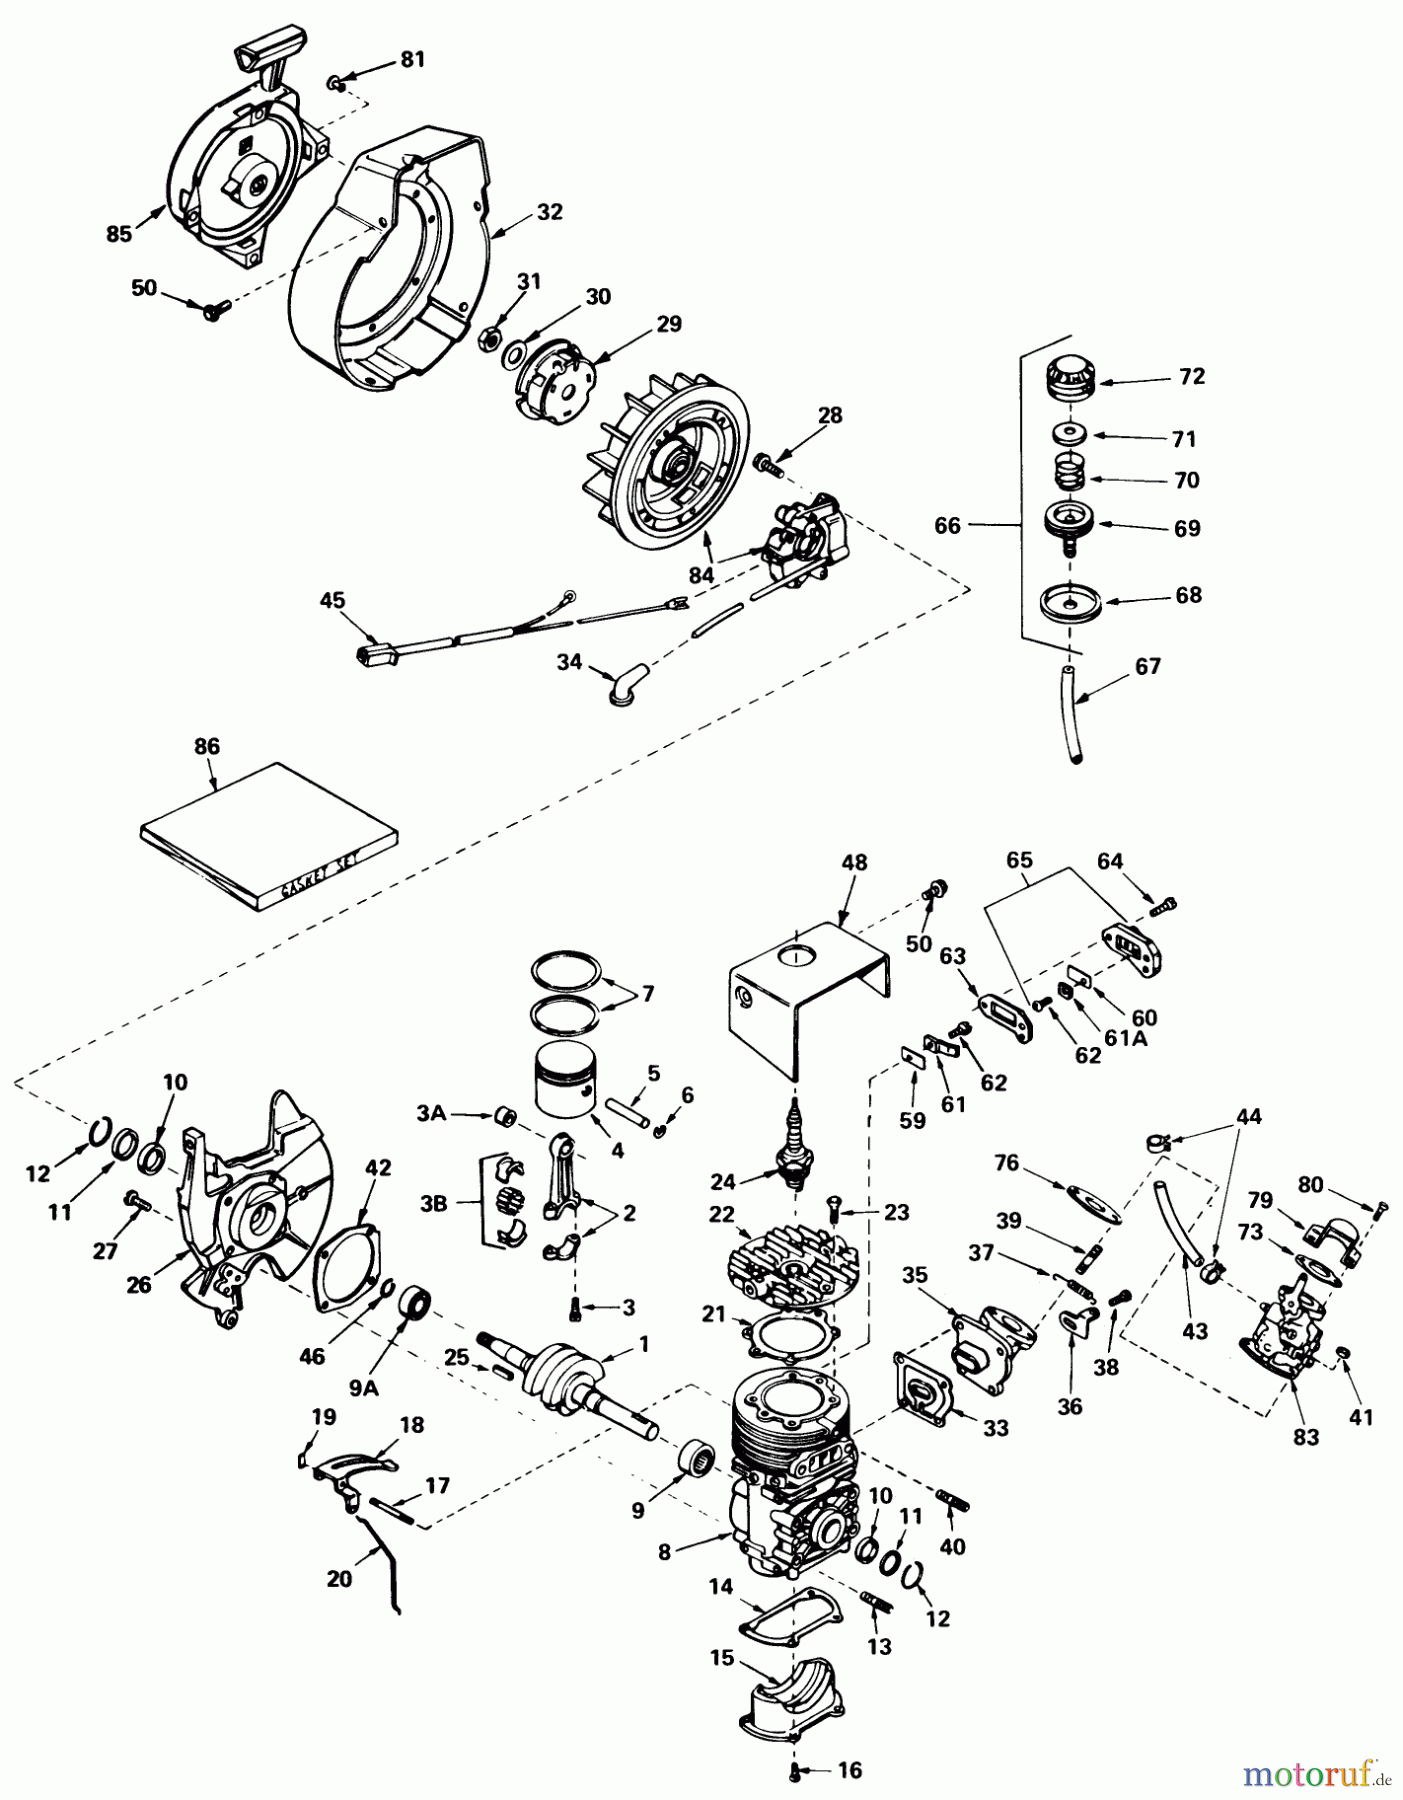  Toro Neu Snow Blowers/Snow Throwers Seite 1 38120 (S-200) - Toro S-200 Snowthrower, 1980 (0015001-0099999) ENGINE ASSEMBLY (ENGINE TECUMSEH MODEL NO. AH520 TYPE 1585)